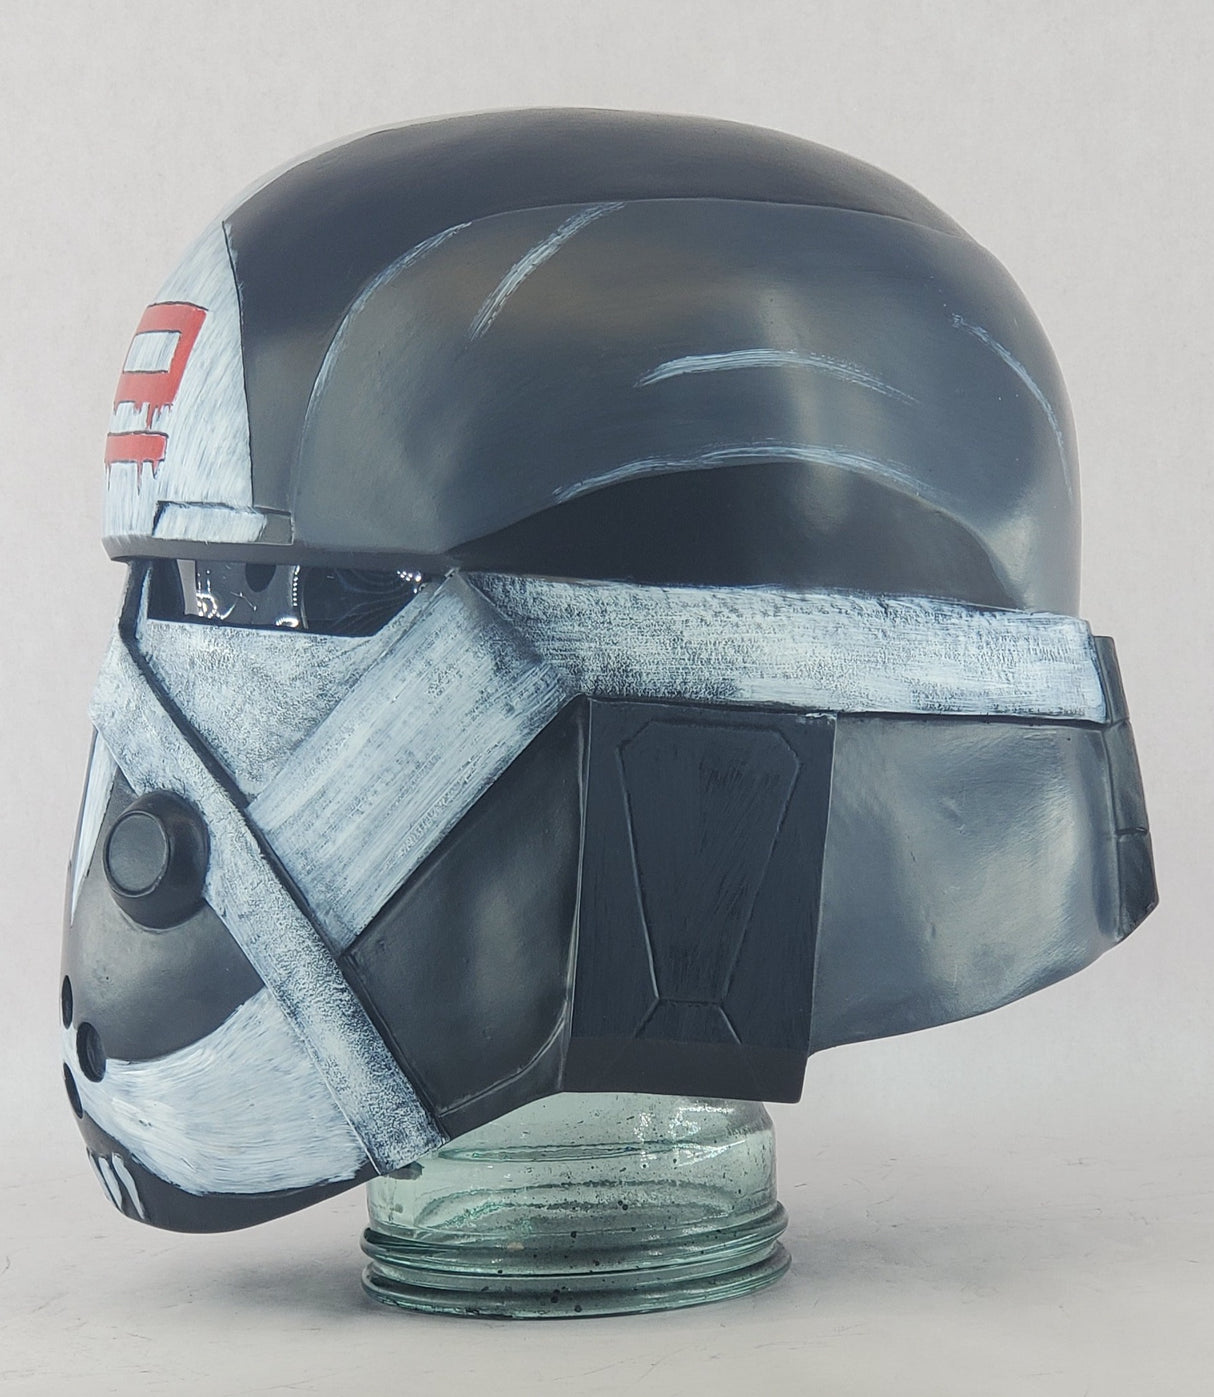 Bad Batch Wrecker Helmet for Cosplay